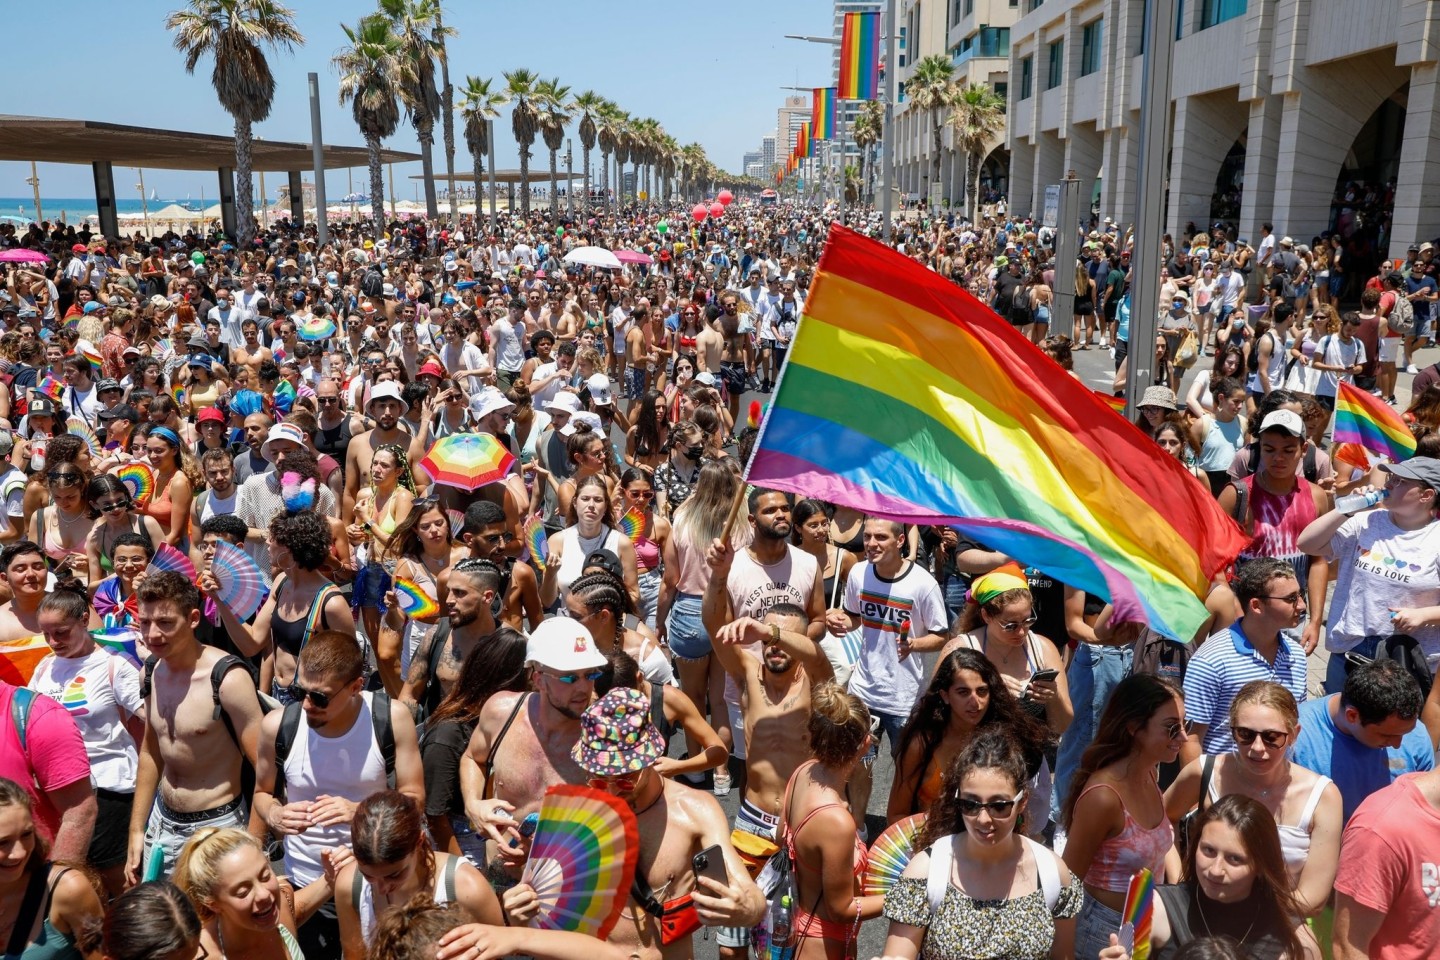 Teilnehmer schwenken Fahnen, Fächer und Schirme in Regenbogenfarben bei der Gay-Pride-Parade.